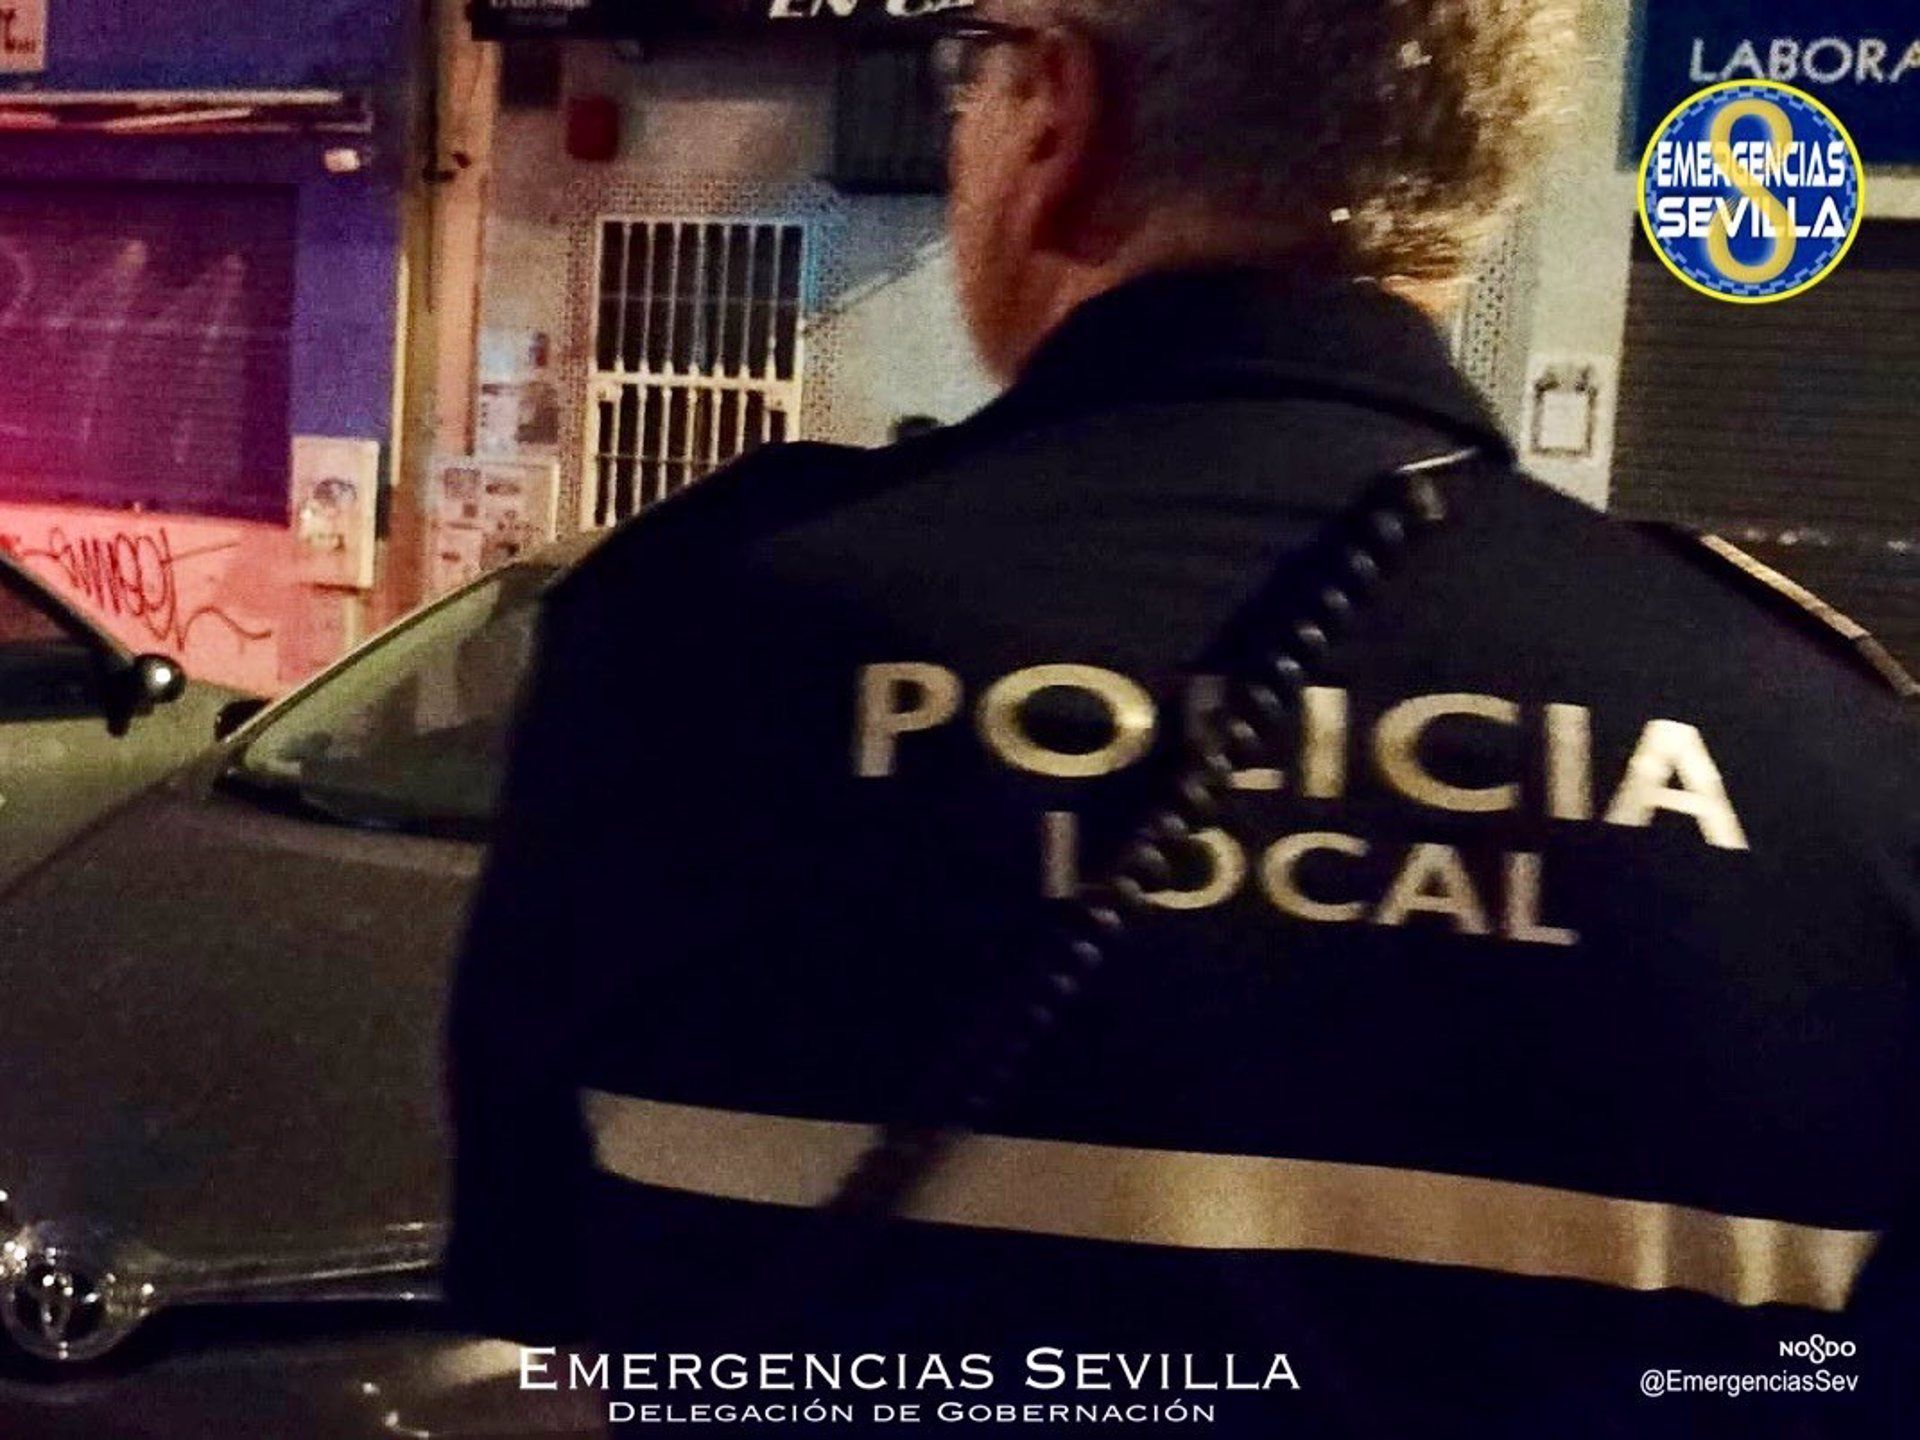 Atienden a una mujer embarazada por violencia de género en Sevilla y acaba en el juzgado por casos pendientes